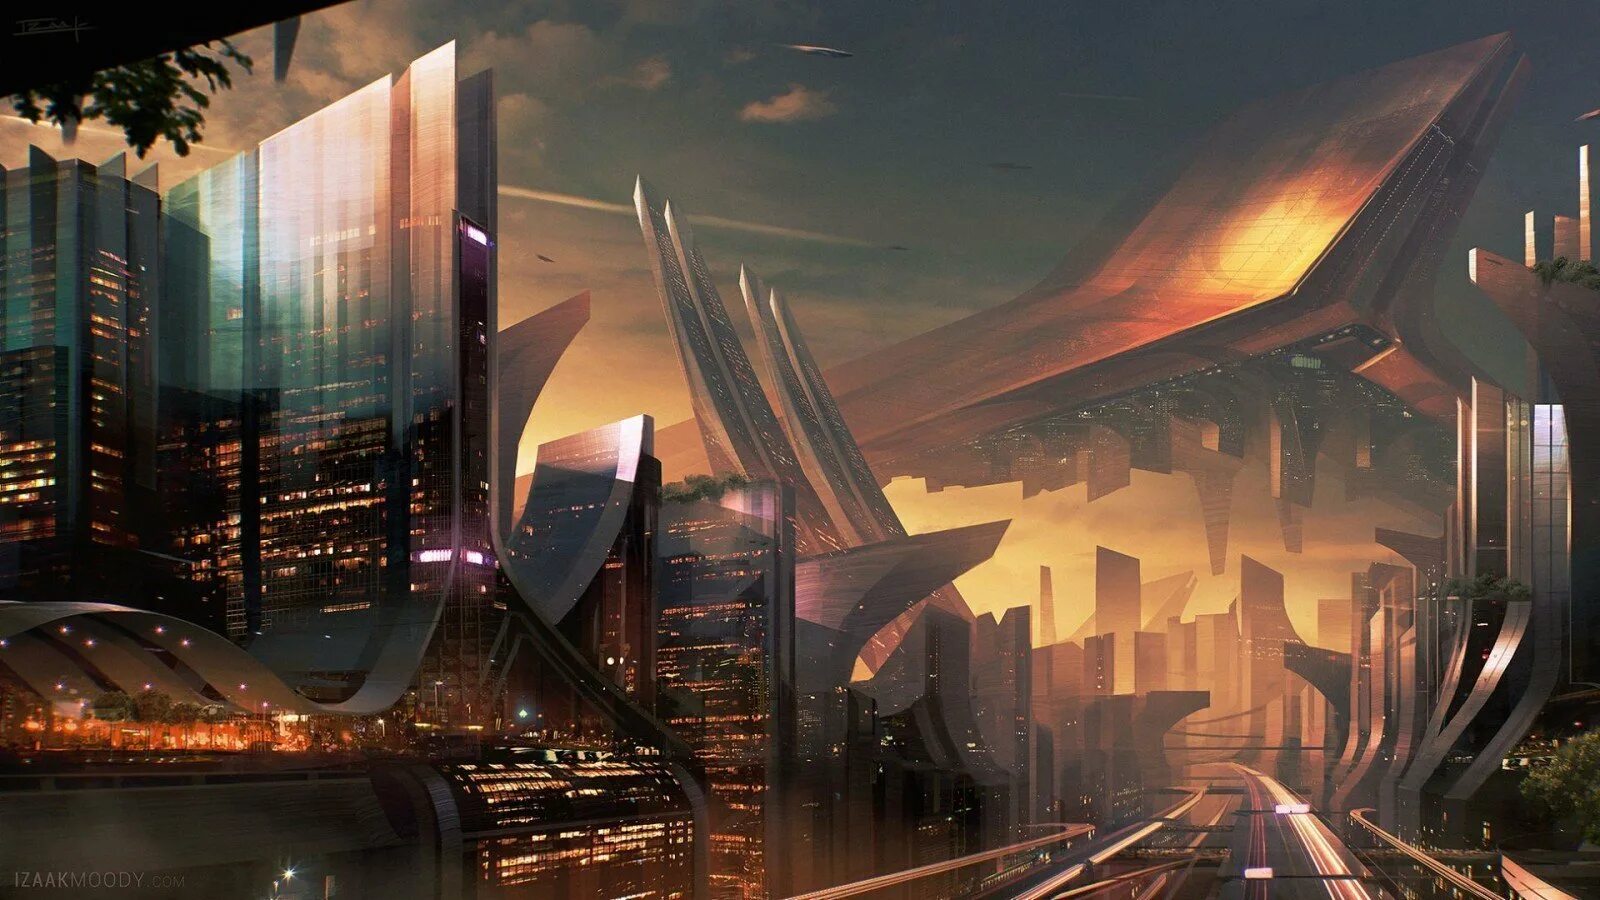 Стоит будущее. Экогород будущего концепт Левиафан. Нео футуризм в архитектуре город будущего. Арт Sci Fi City'. Sci Fi город футуризм.